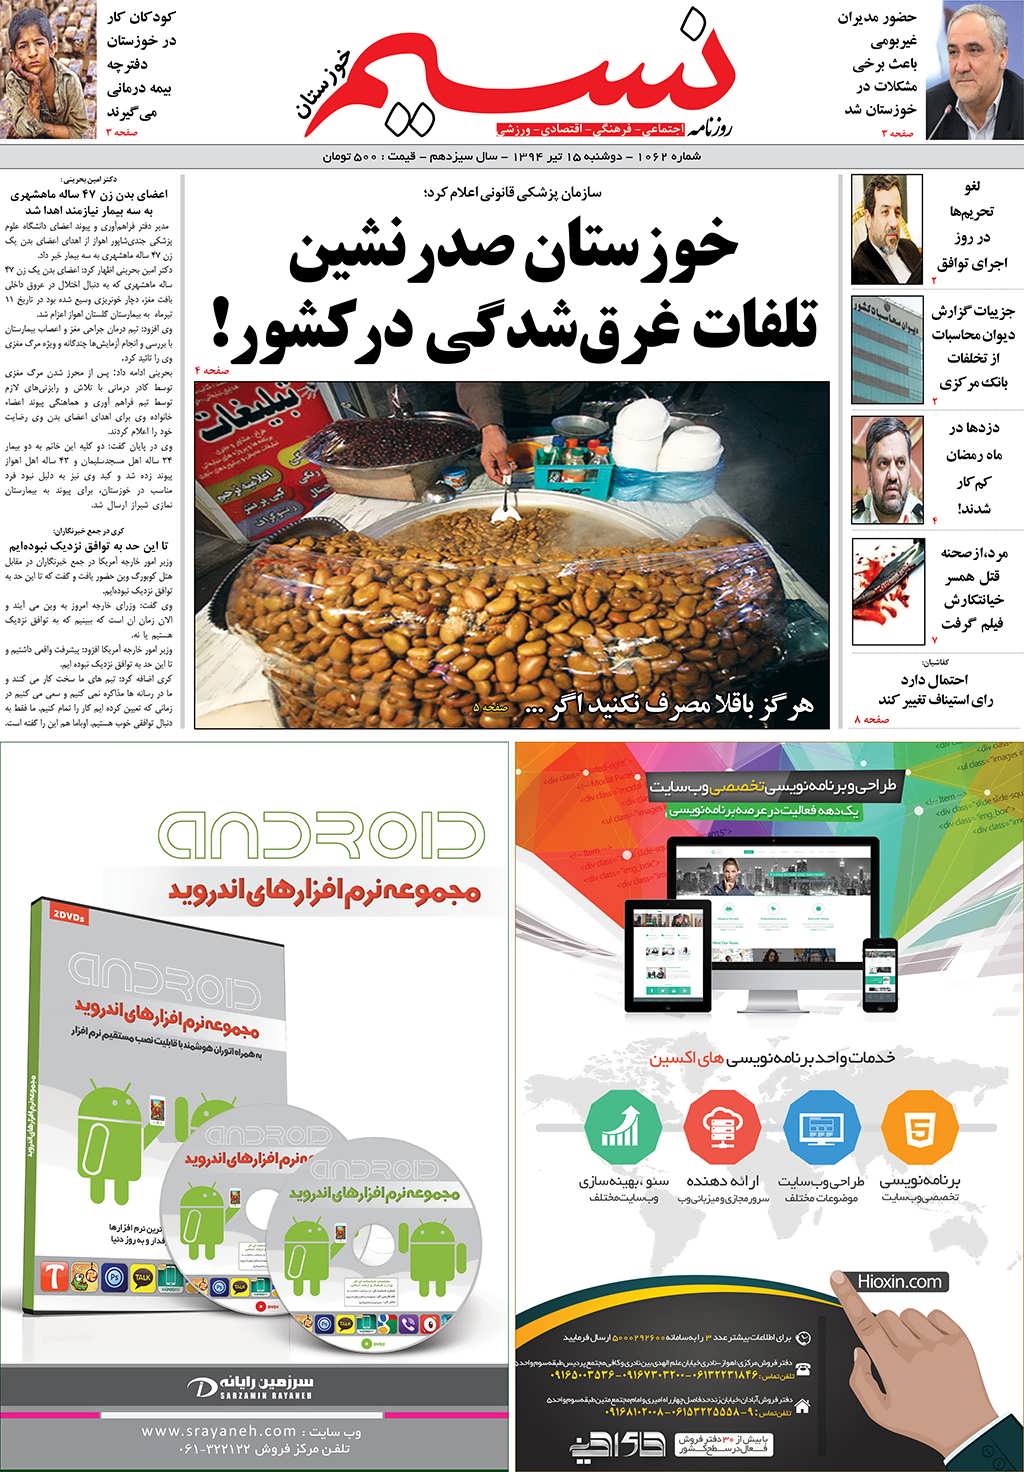 صفحه اصلی روزنامه نسیم شماره 1062